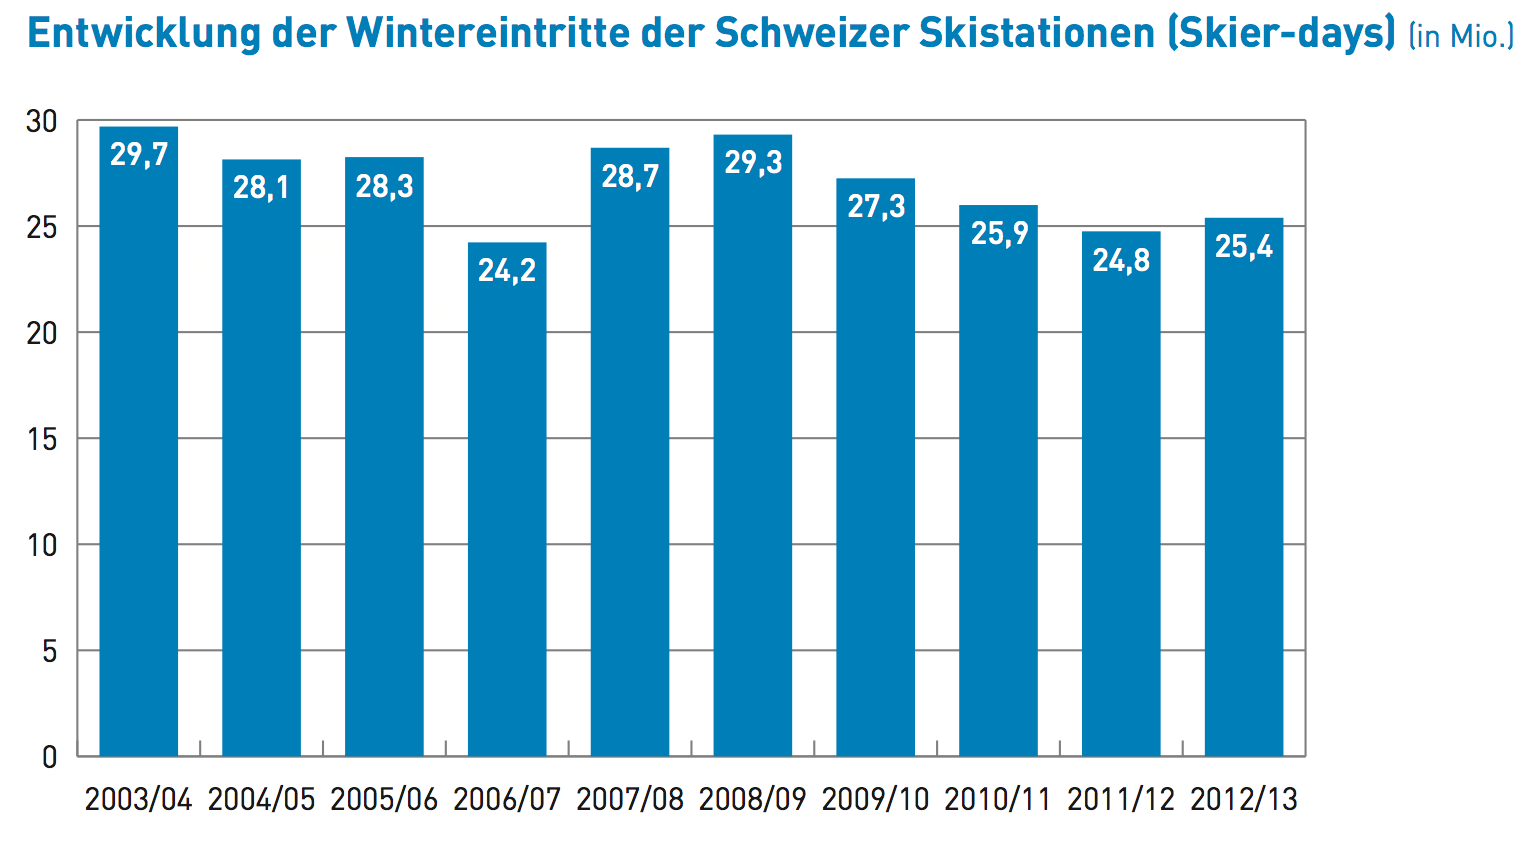 (Quelle: Saisonbilanz der Schweizer Skigebiete - Winter 2012/13, Seilbahnen Schweiz)